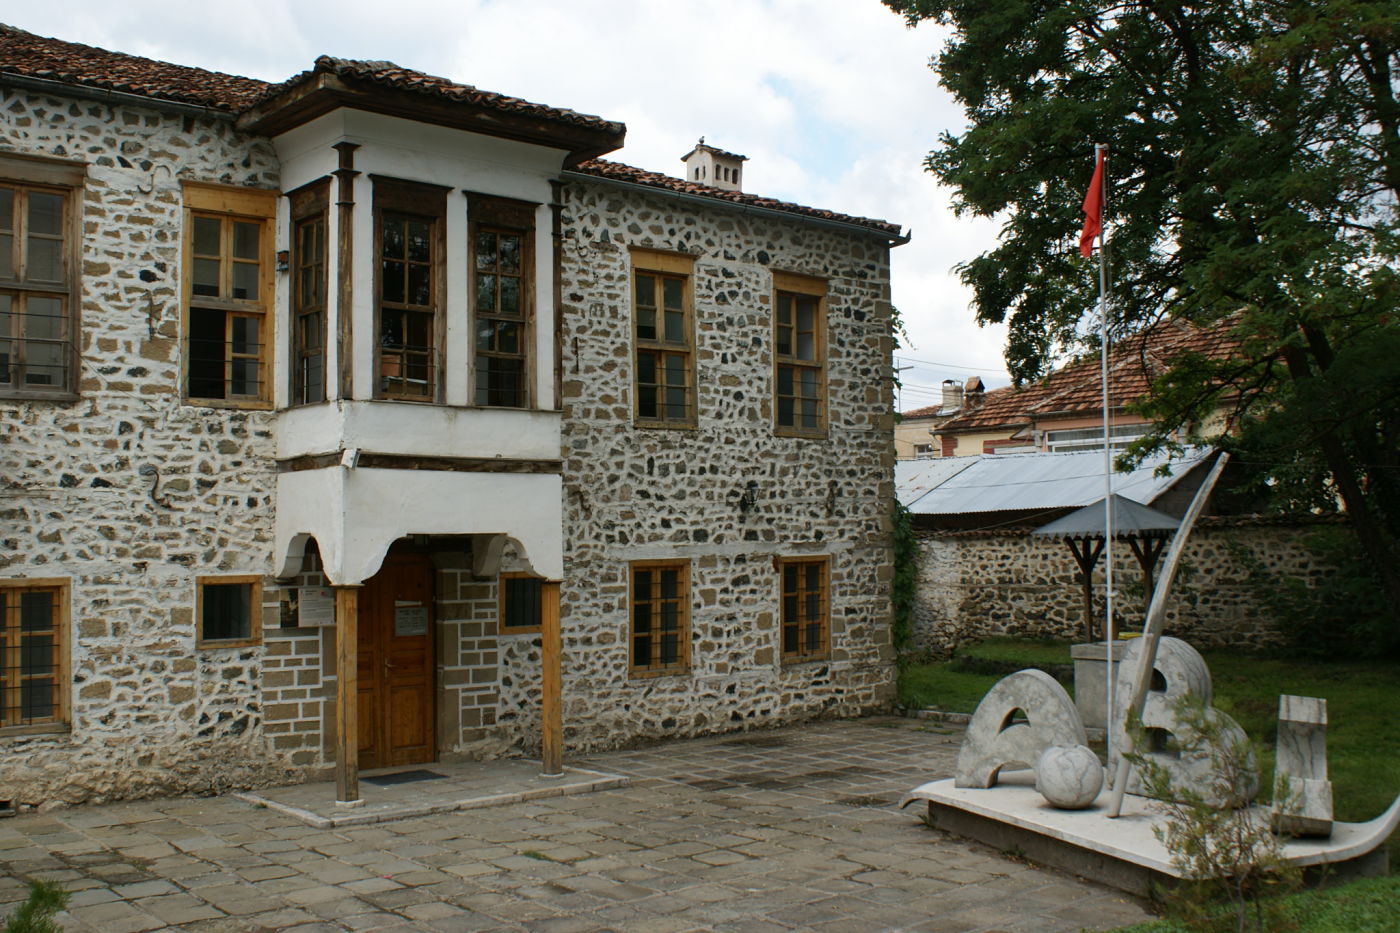 La prima scuola in lingua albanese fu aperta il 7 marzo del 1887, durante l’occupazione ottomana e fu fondata da un gruppo di patrioti albanesi del risorgimento nazionale.